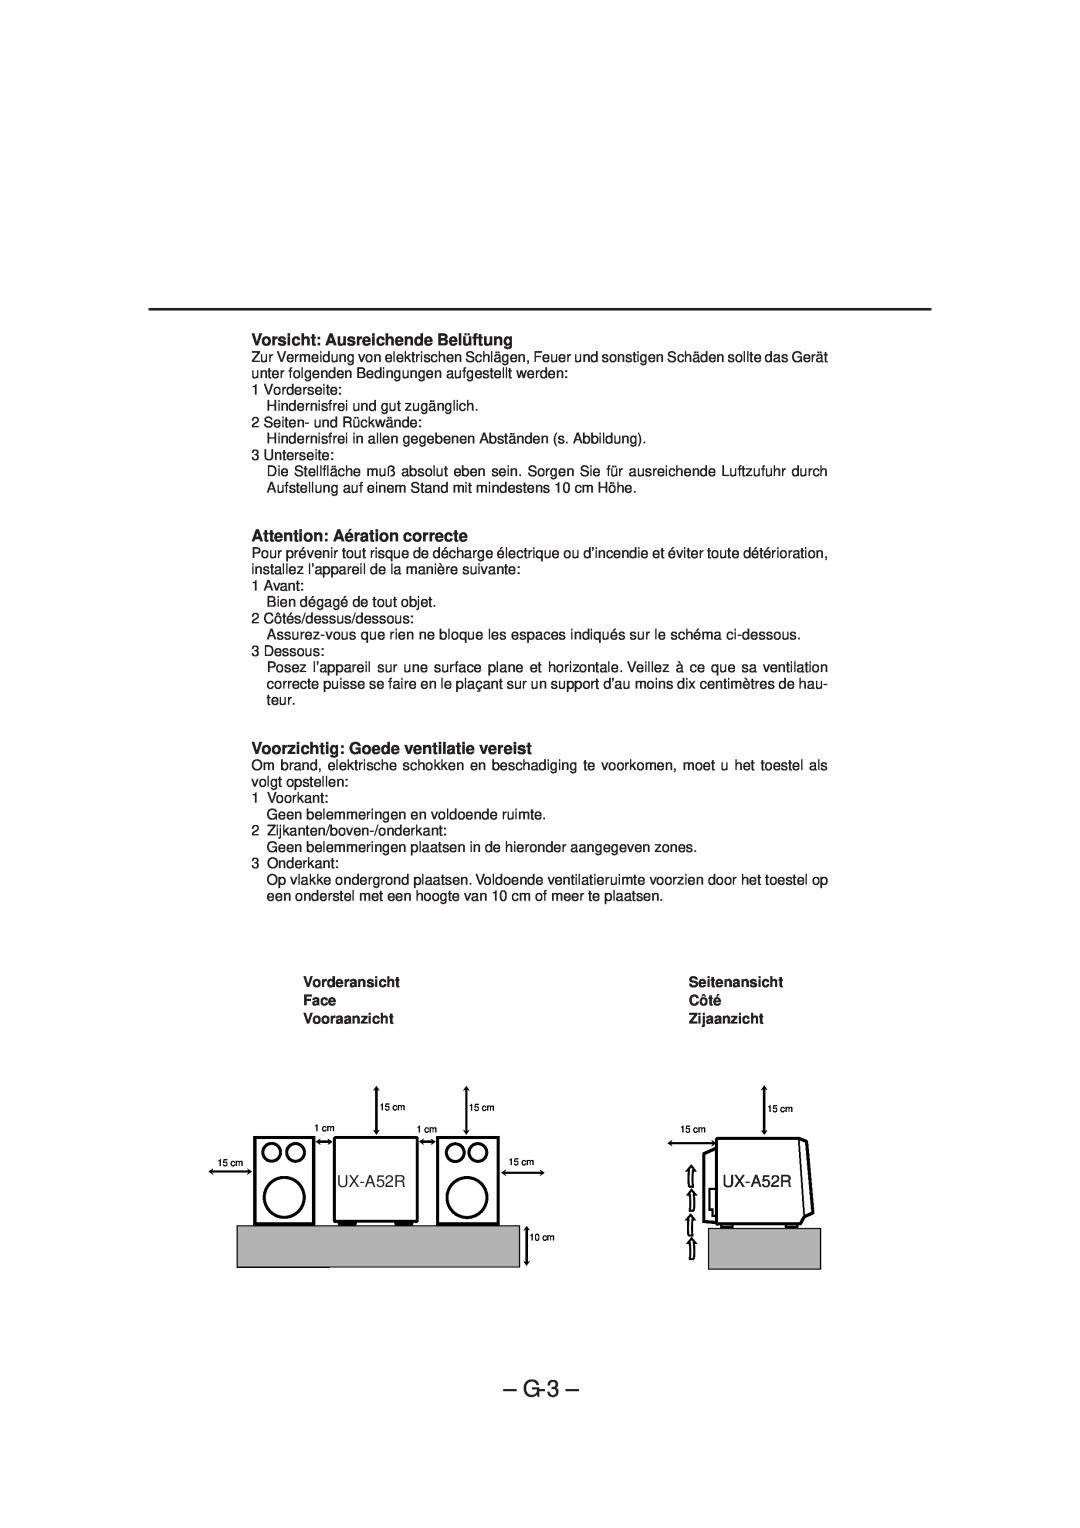 JVC UX-A52R manual G-3, Vorsicht Ausreichende Belüftung, Attention Aération correcte, Voorzichtig Goede ventilatie vereist 